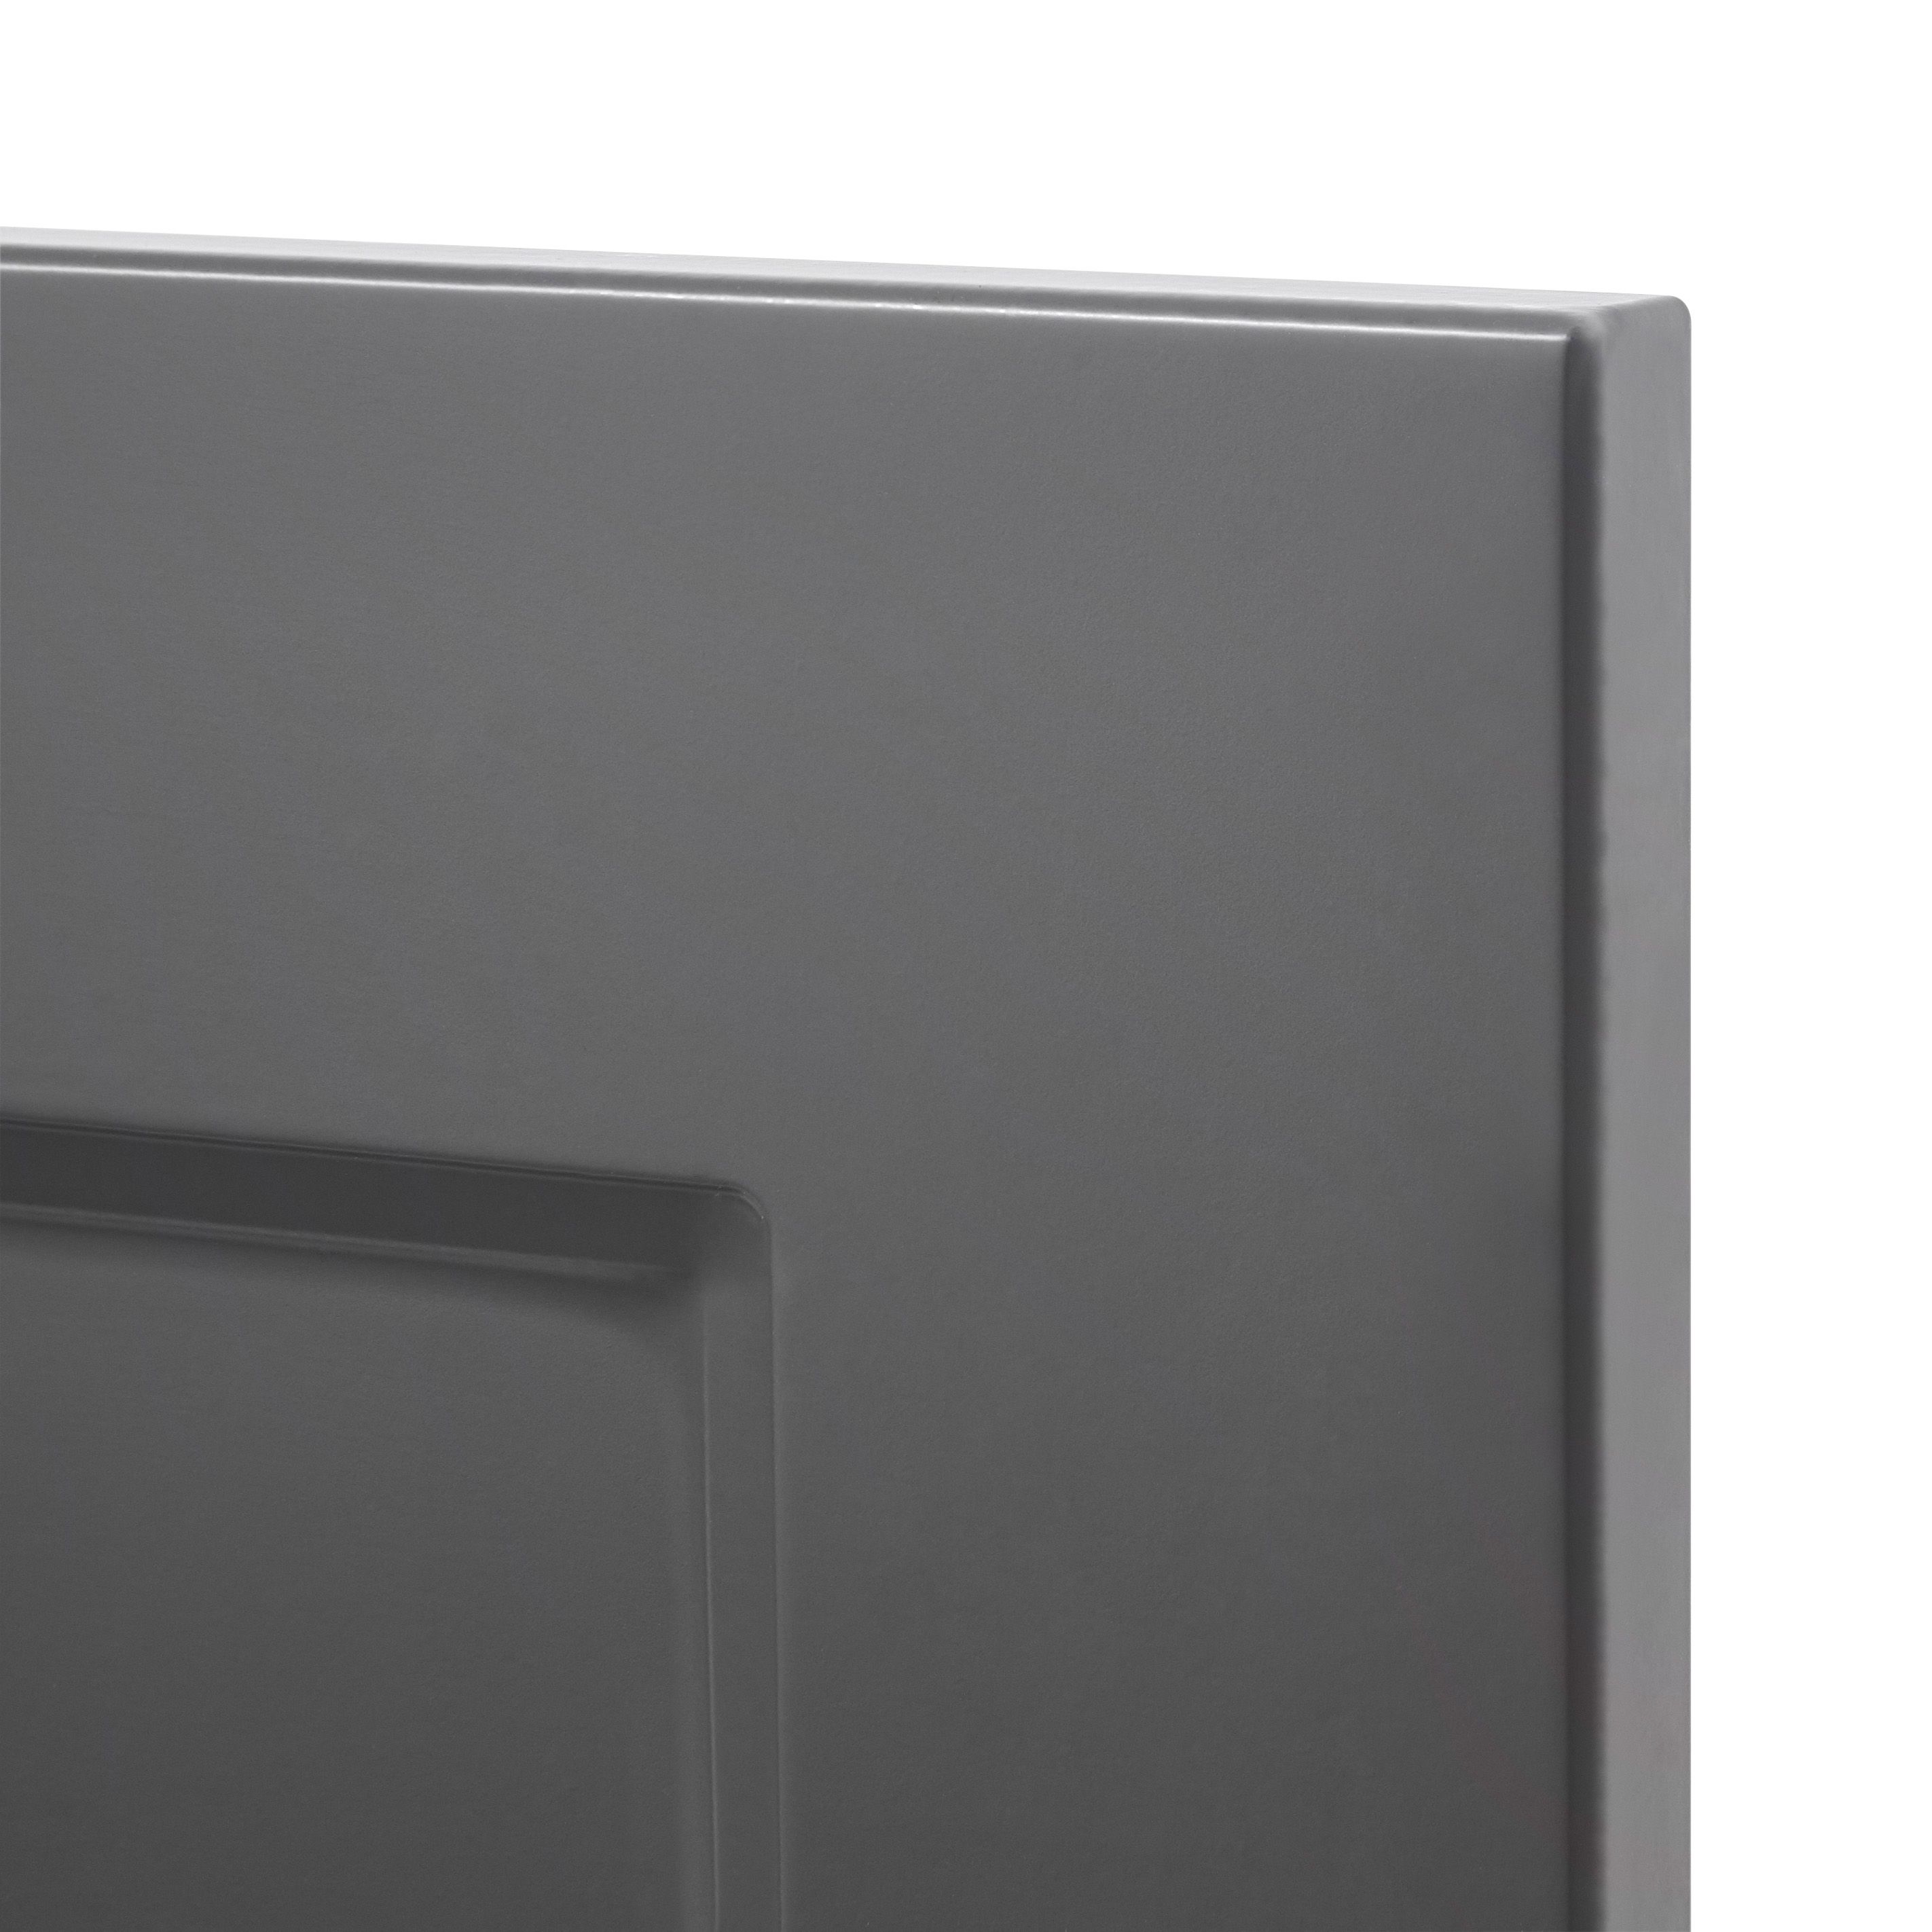 GoodHome Artemisia Matt graphite classic shaker Drawer front, bridging door & bi fold door, (W)500mm (H)356mm (T)18mm